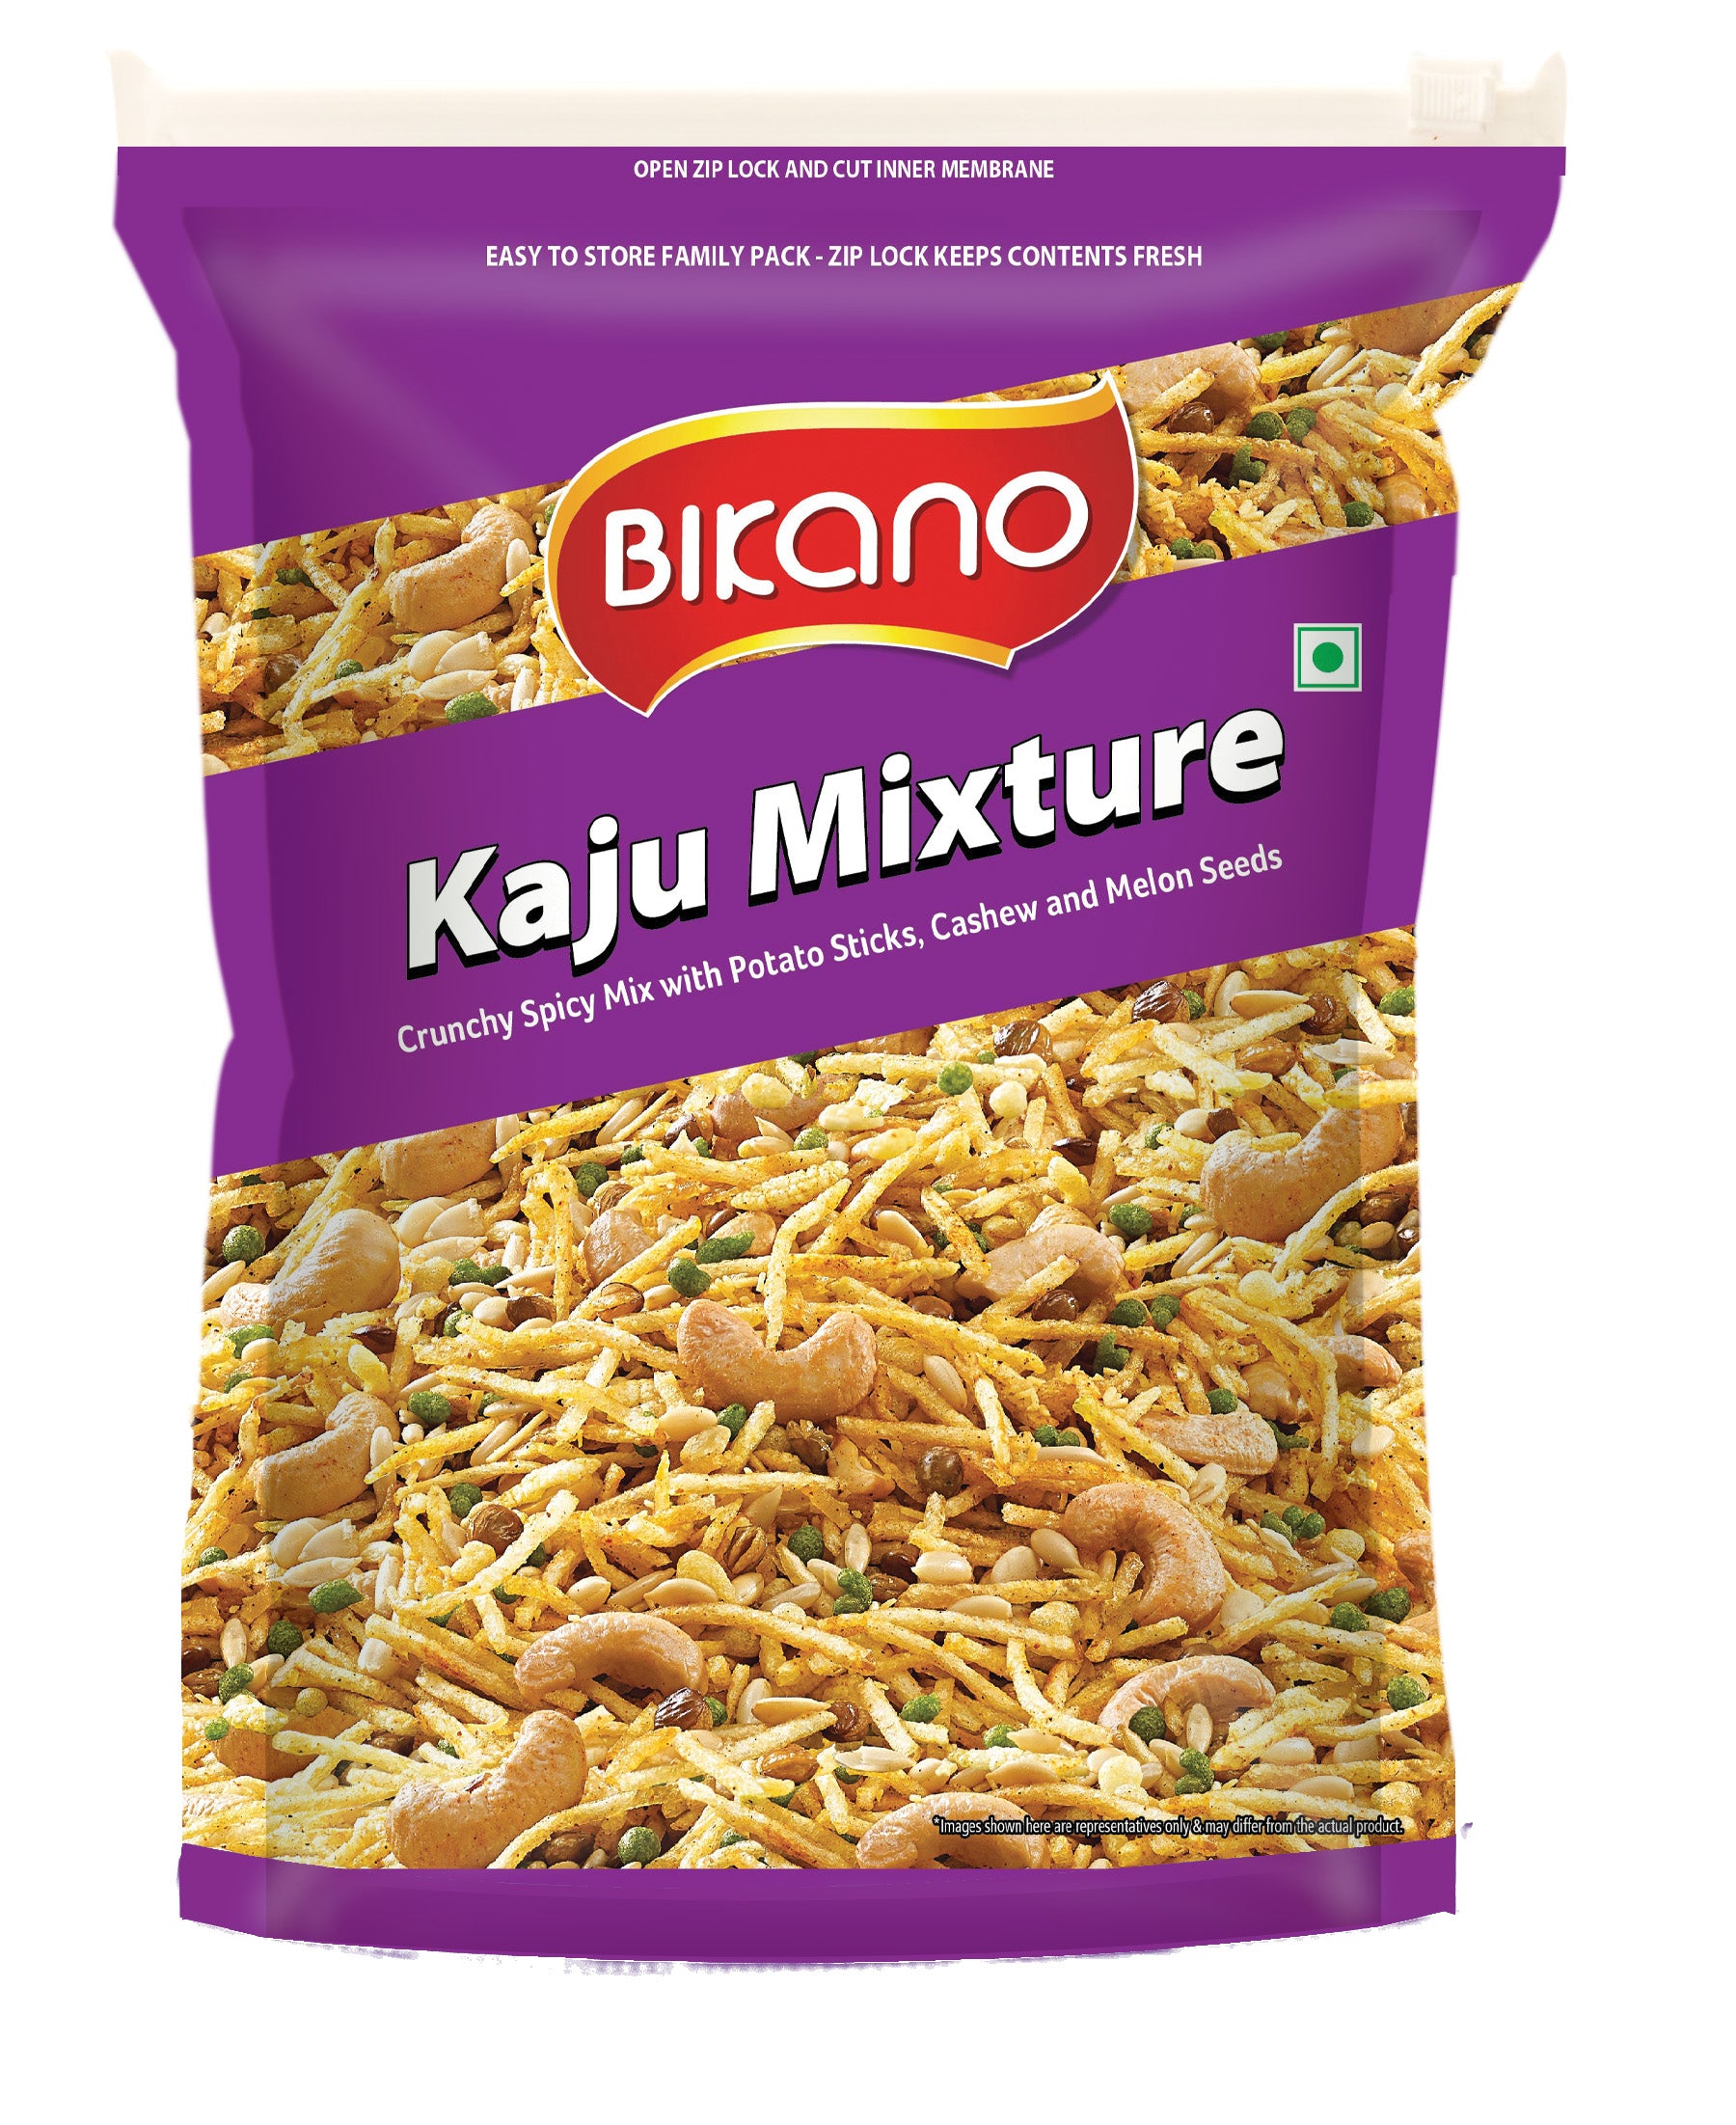 Bikano Kaju Mix